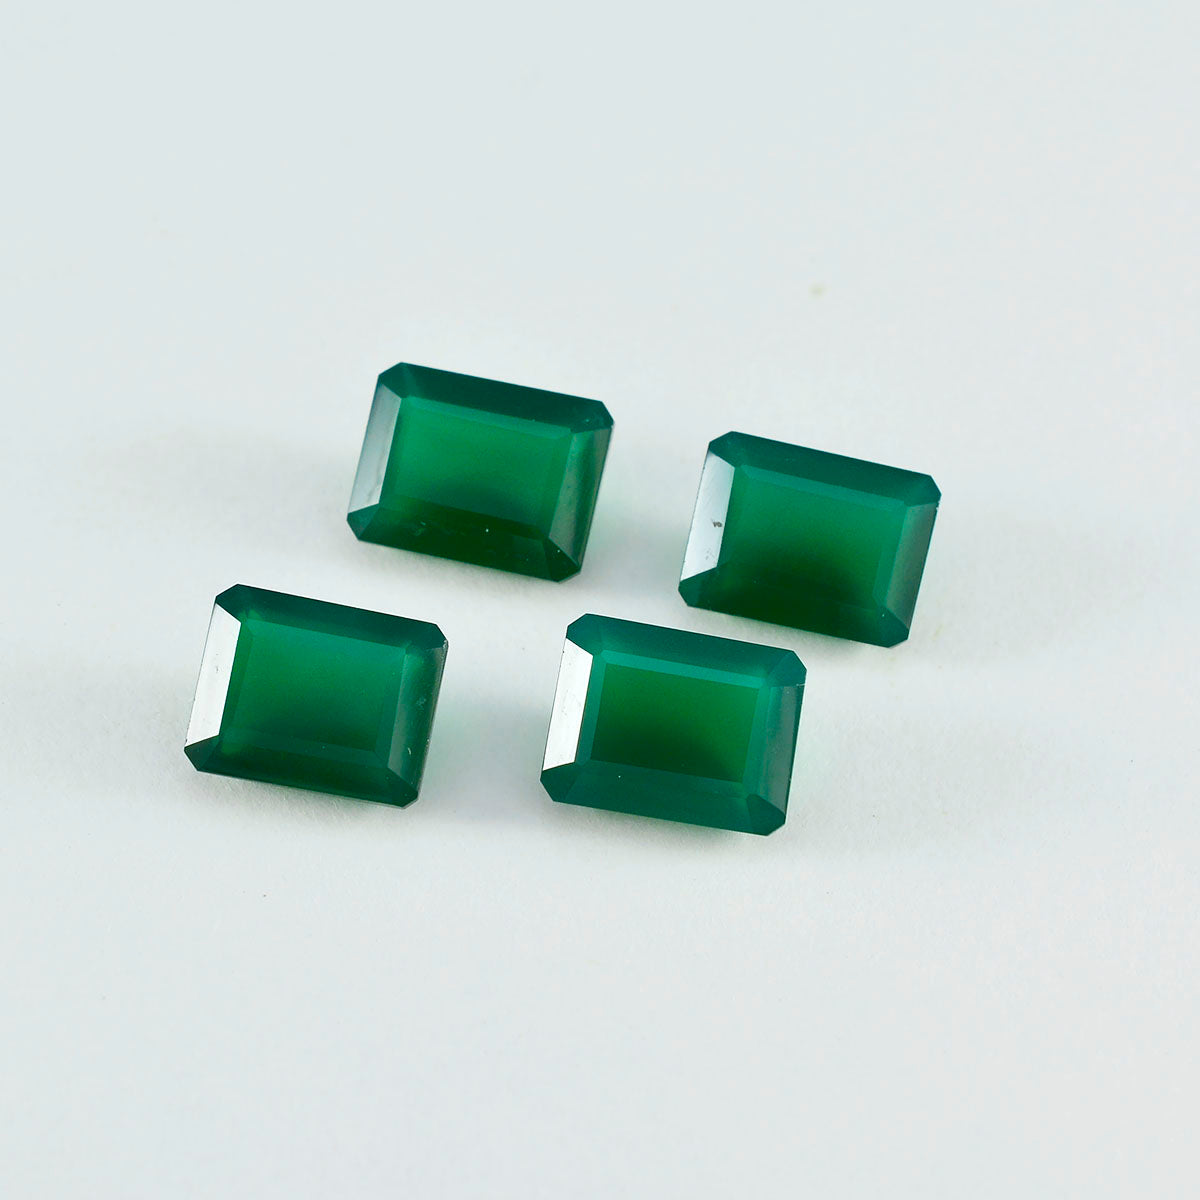 Riyogems 1 Stück echter grüner Onyx, facettiert, 5 x 7 mm, achteckige Form, ein hochwertiger loser Stein